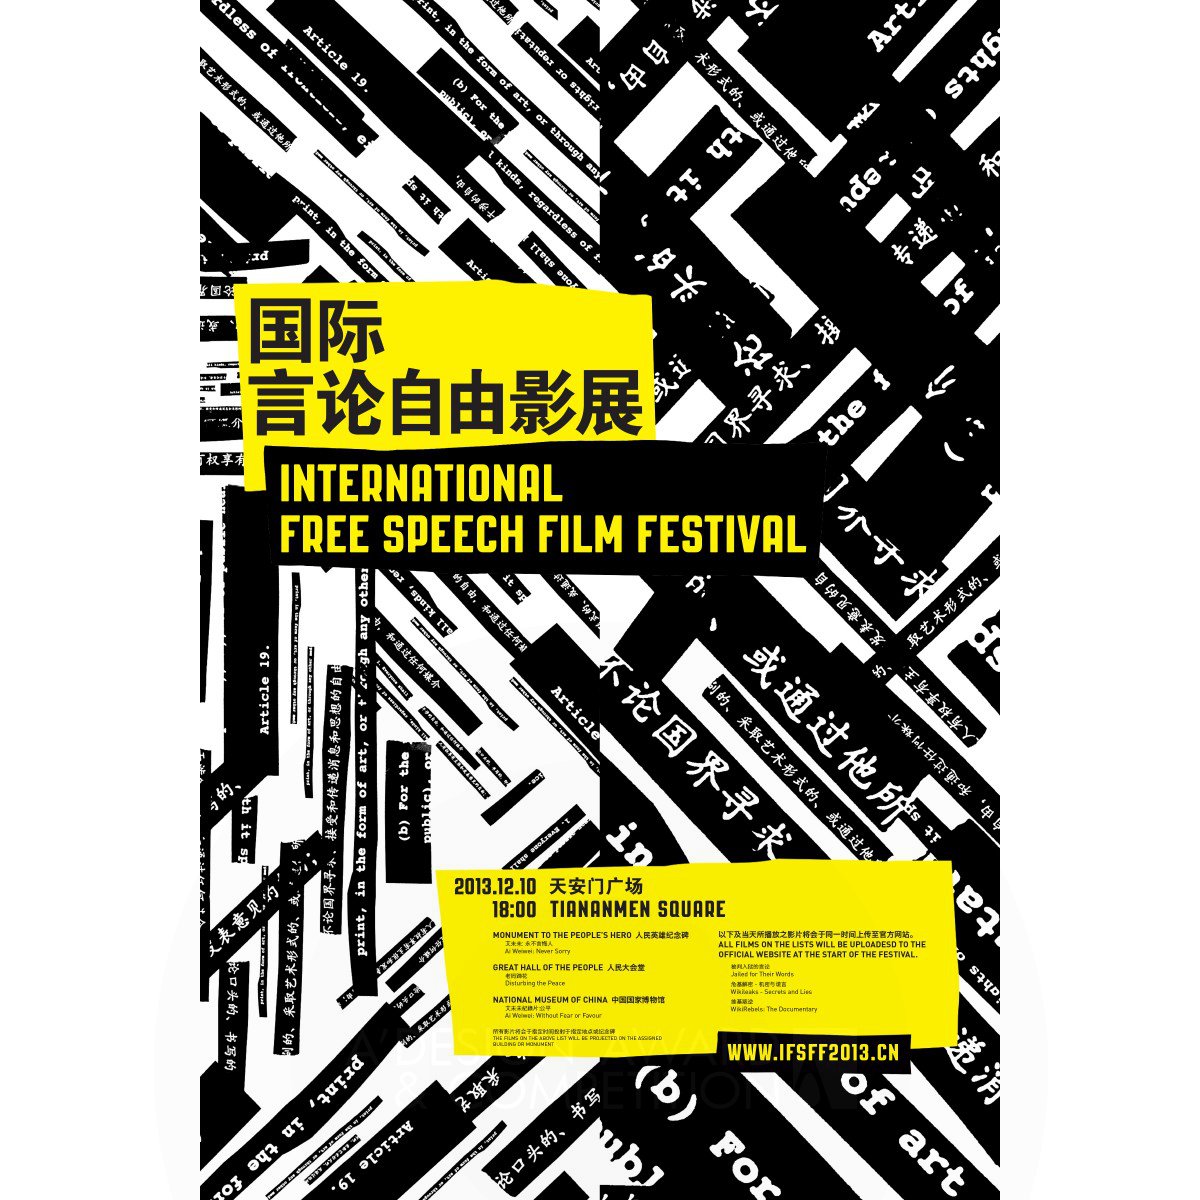 International Free Speech Film Festival Identity by Yen Hugn Lin